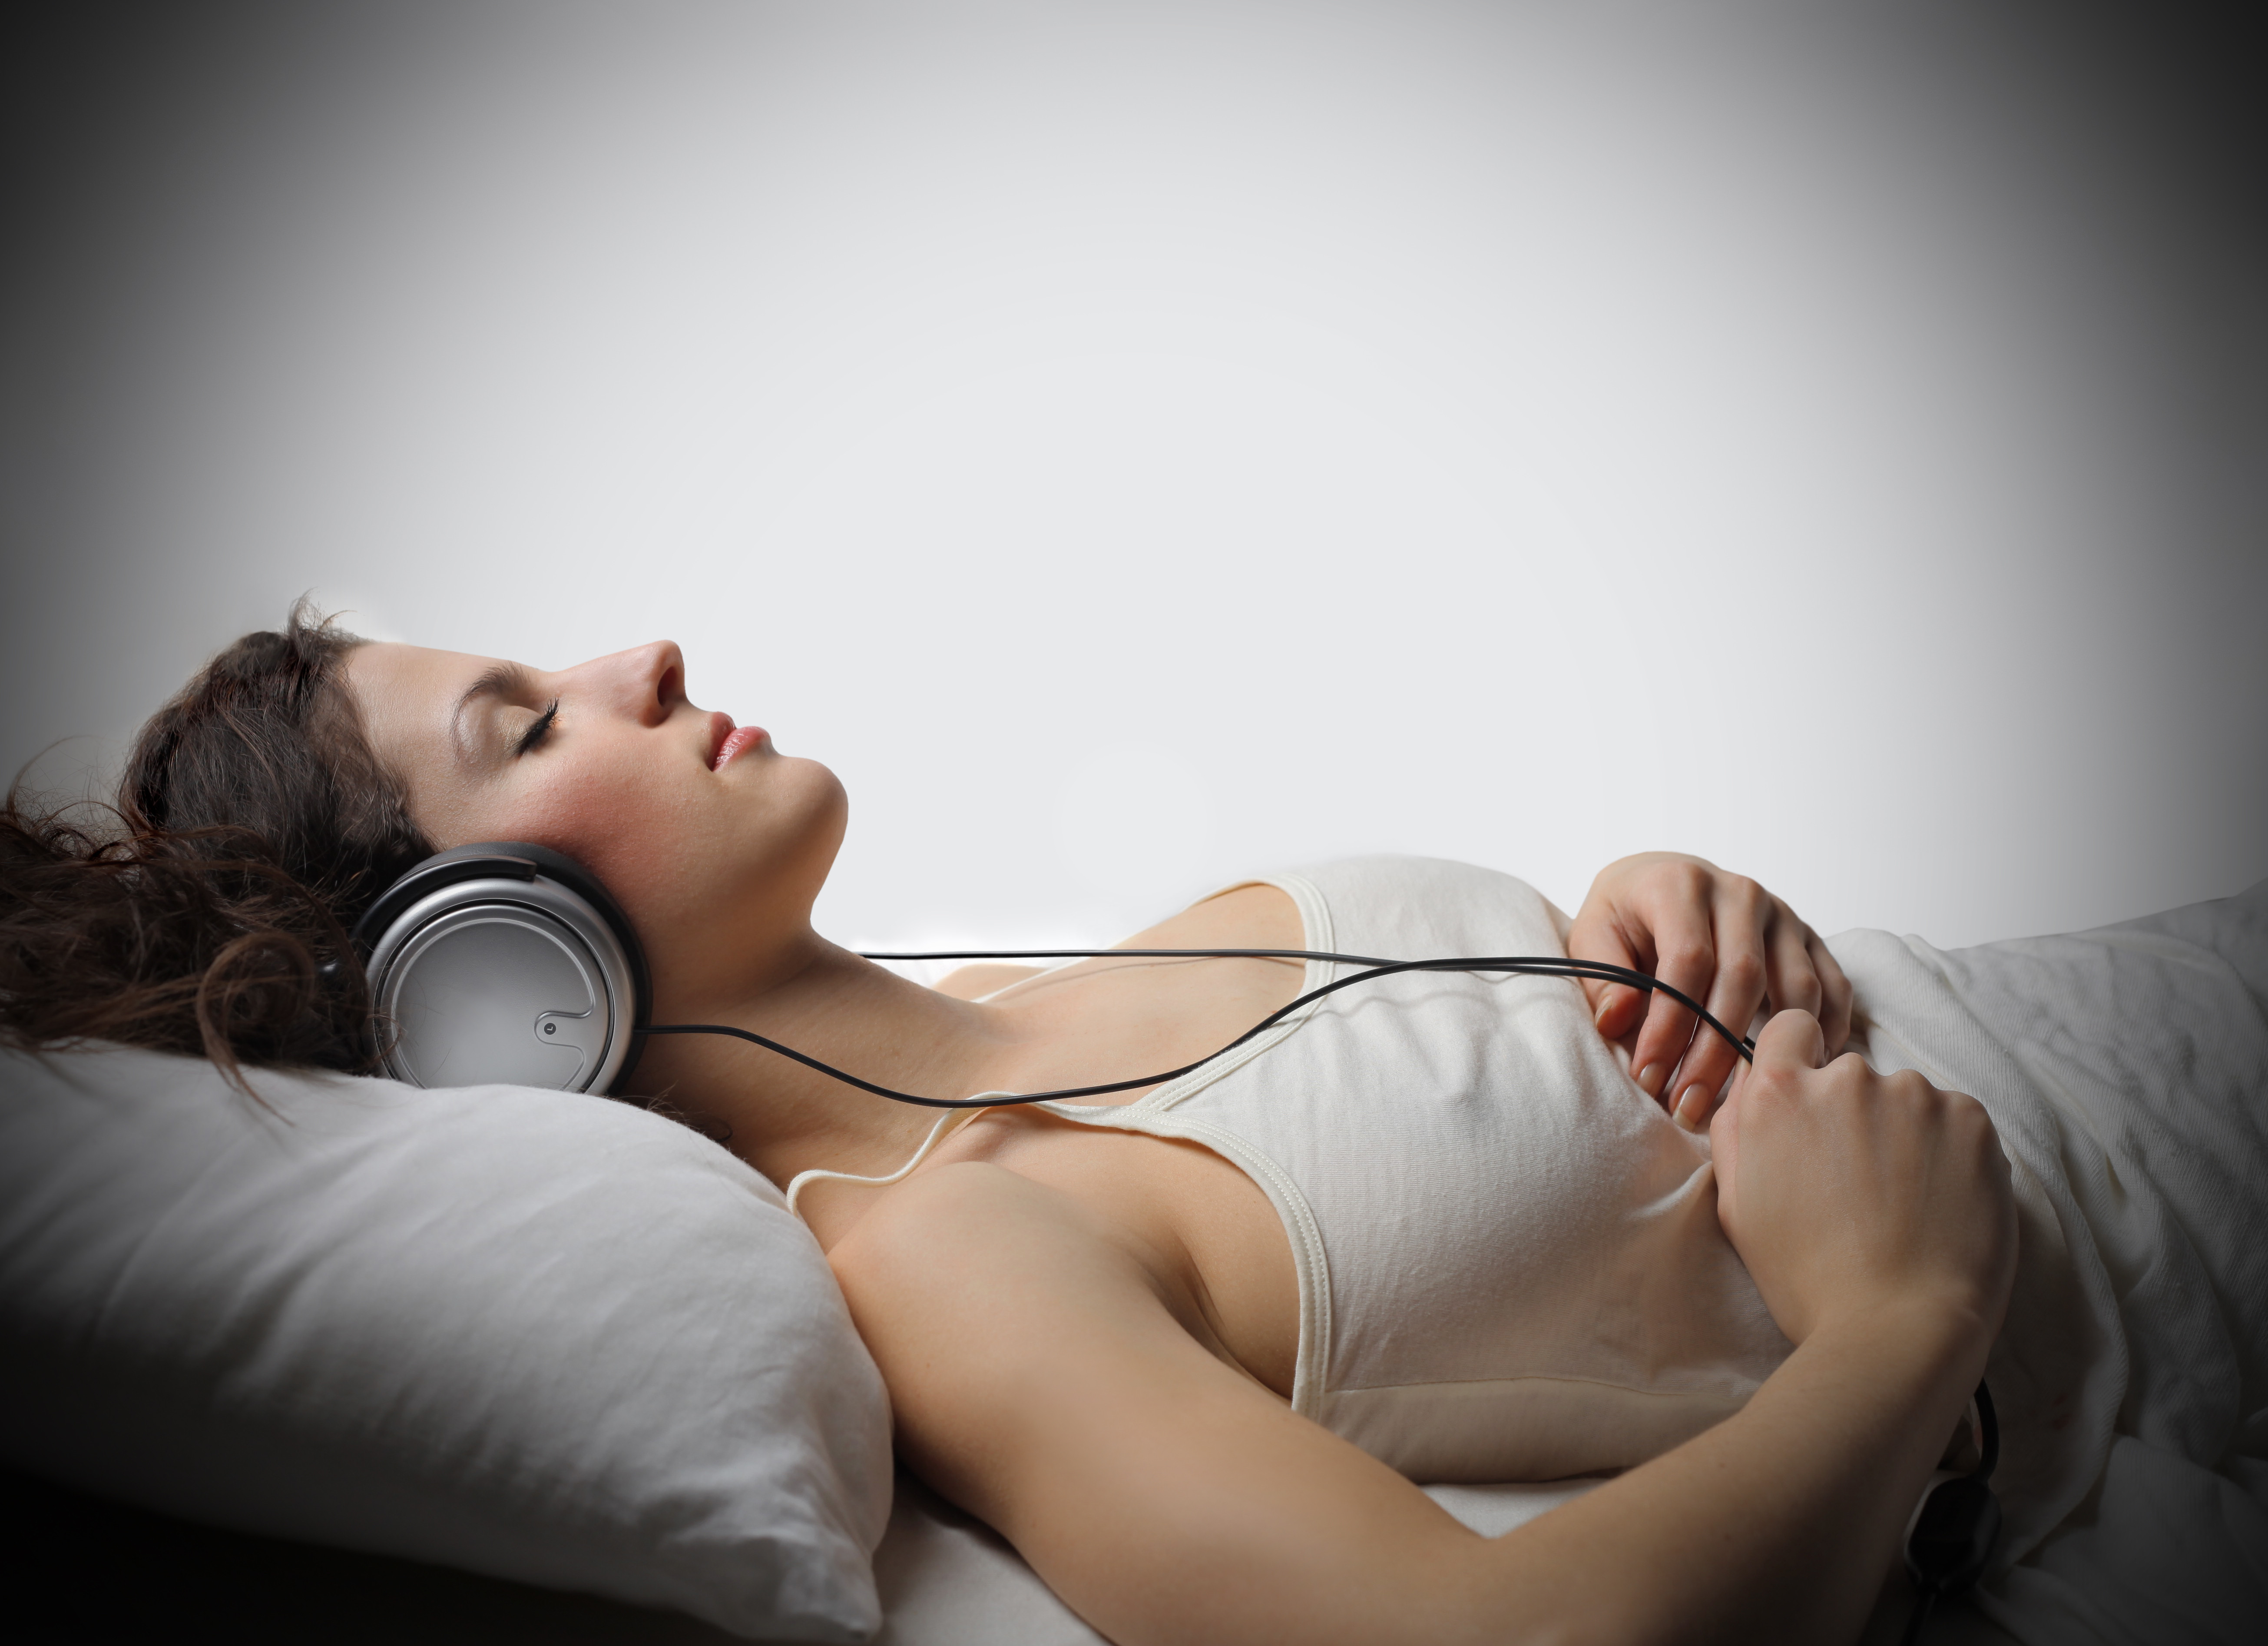 Музыка спать дает. Медитация в наушниках. Девушка в наушниках отдыхает. Музыкотерапия во сне.